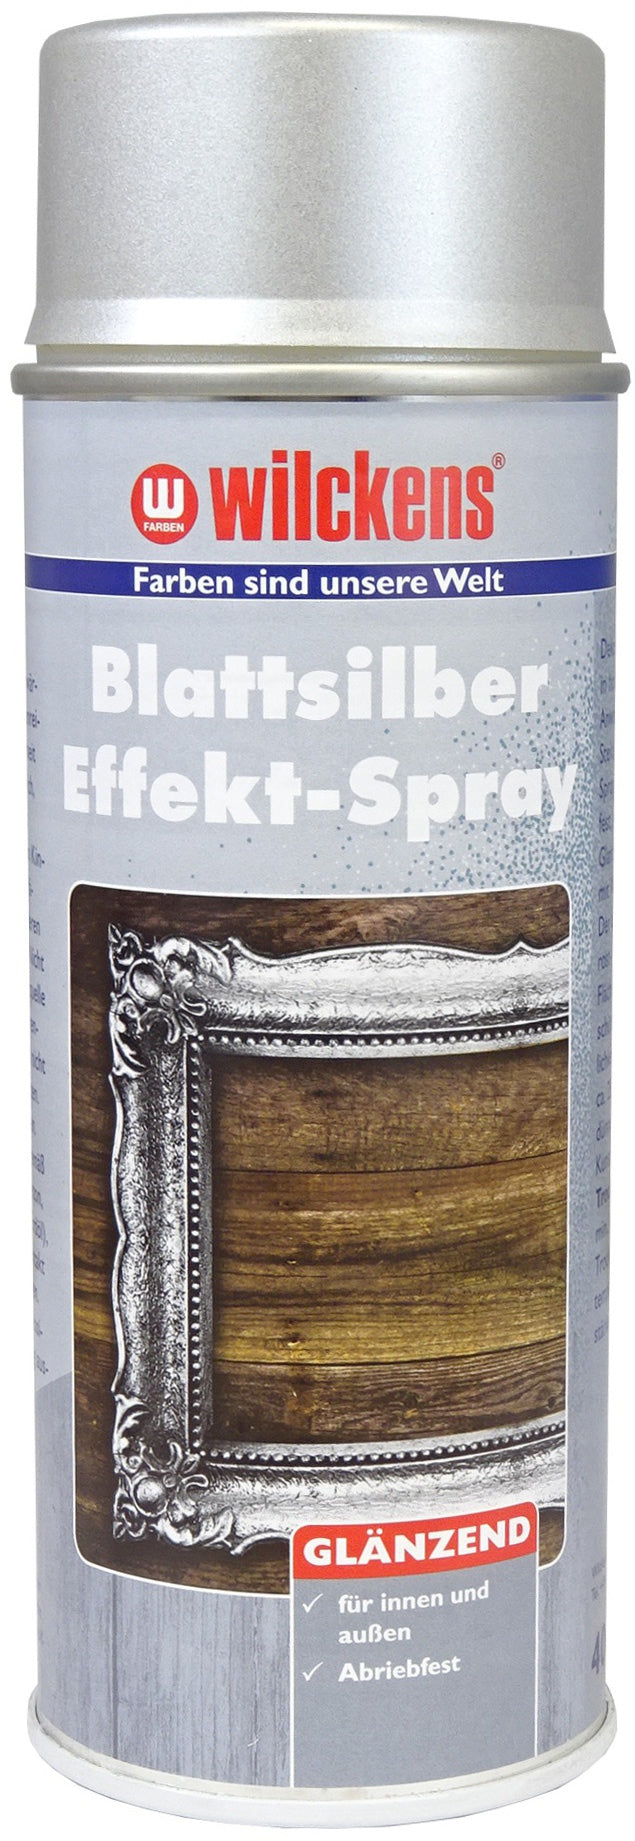 Wilckens Effekt Blattgold Blattsilber Gold Silber Spray 400ml Spraydose Lack